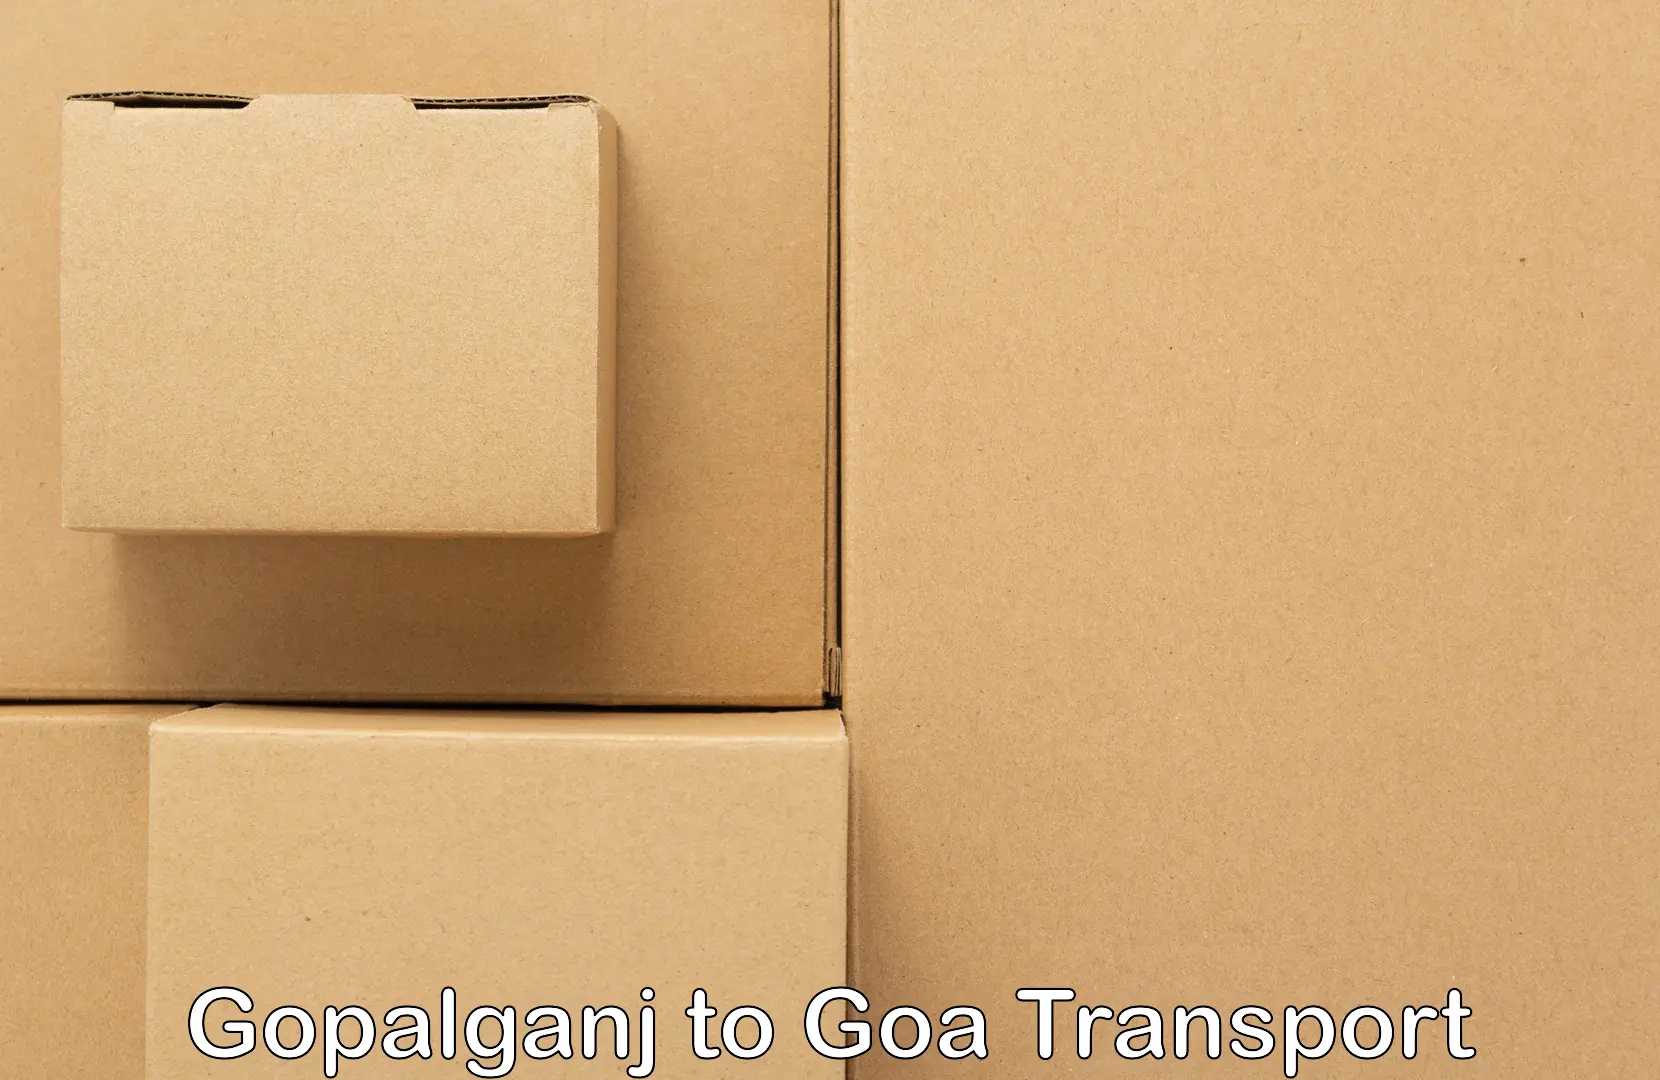 Delivery service Gopalganj to Panjim